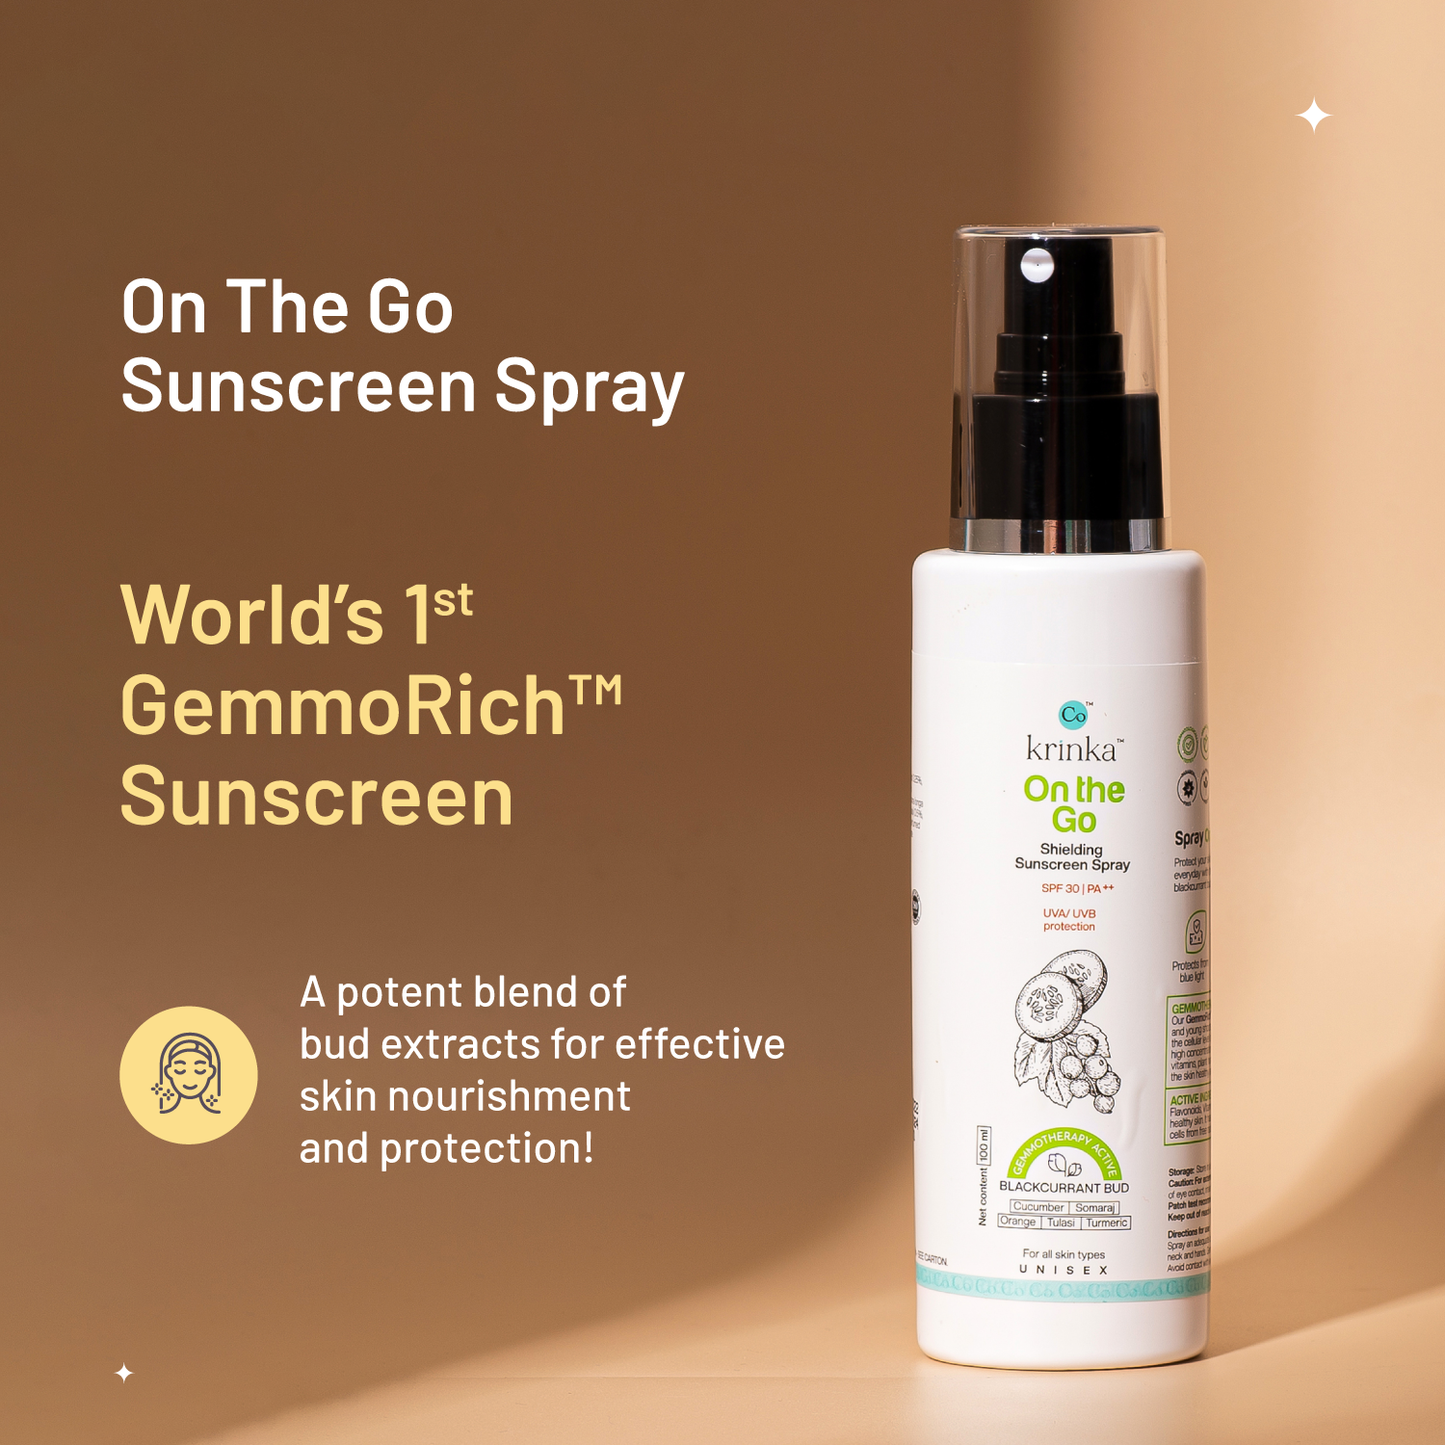 On The Go- Sunscreen Spray for Face